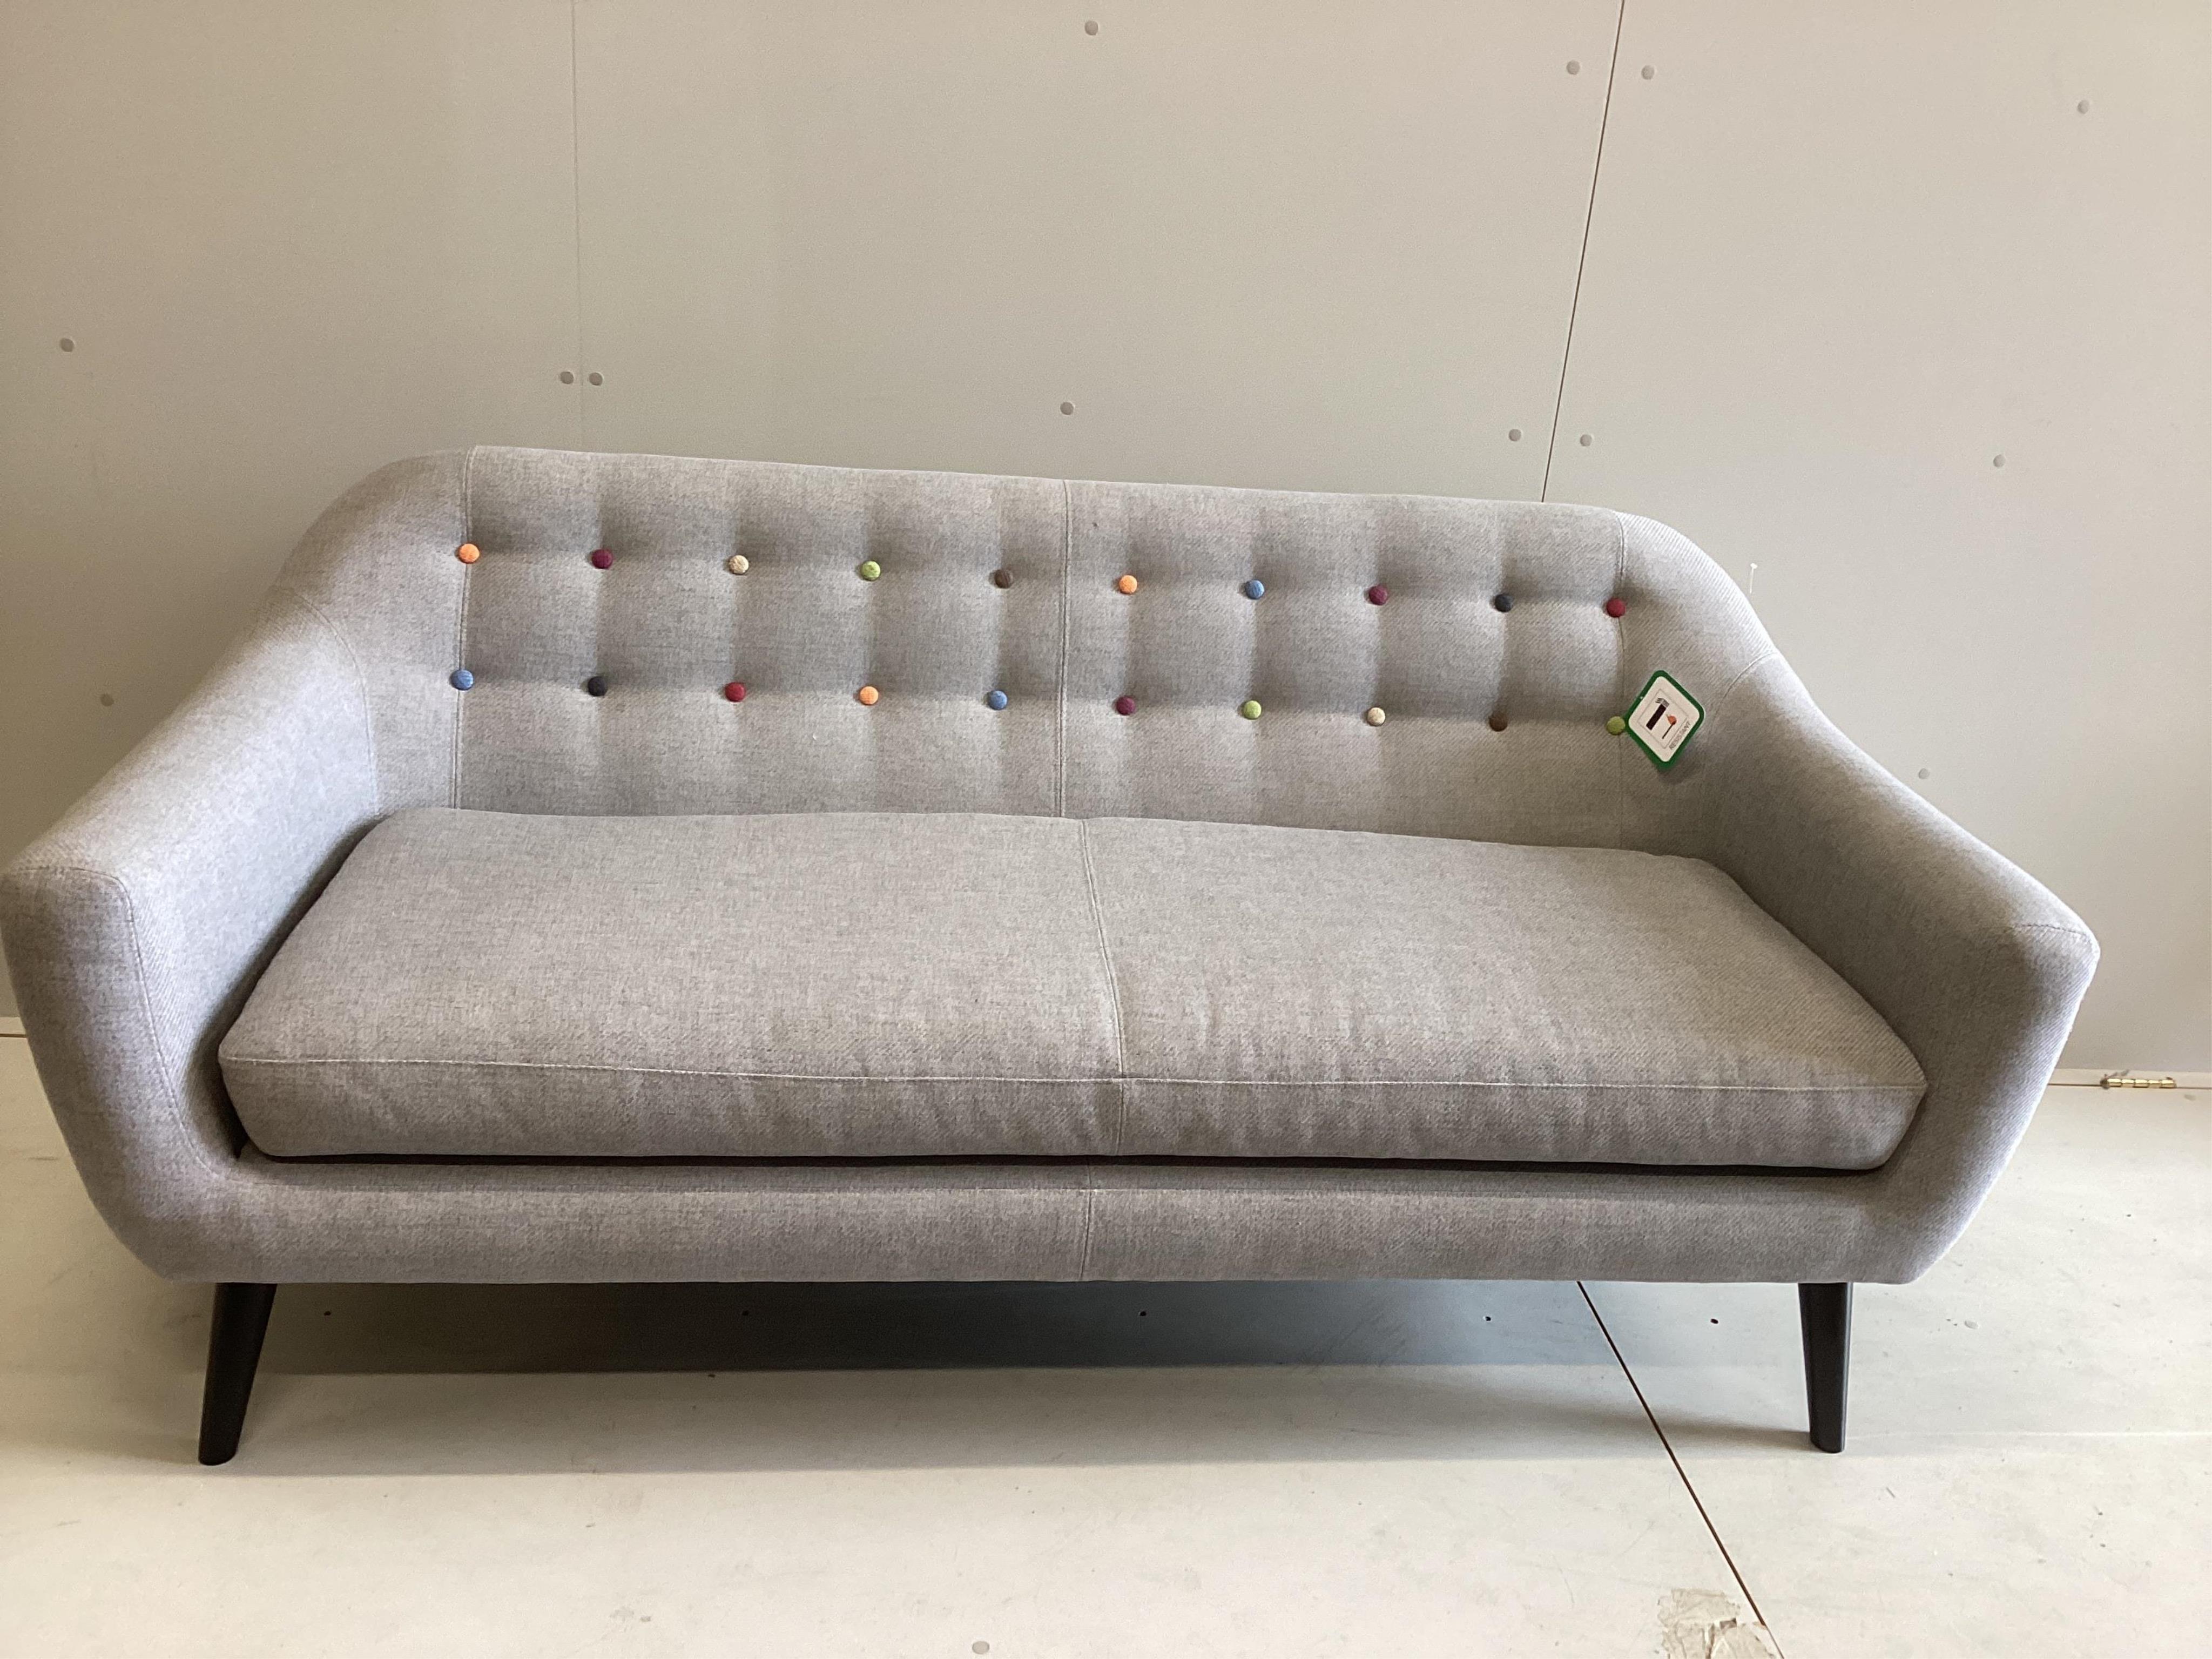 A new Made.Com Contemporary sofa, width 186cm, depth 80cm, height 83cm. Condition - excellent